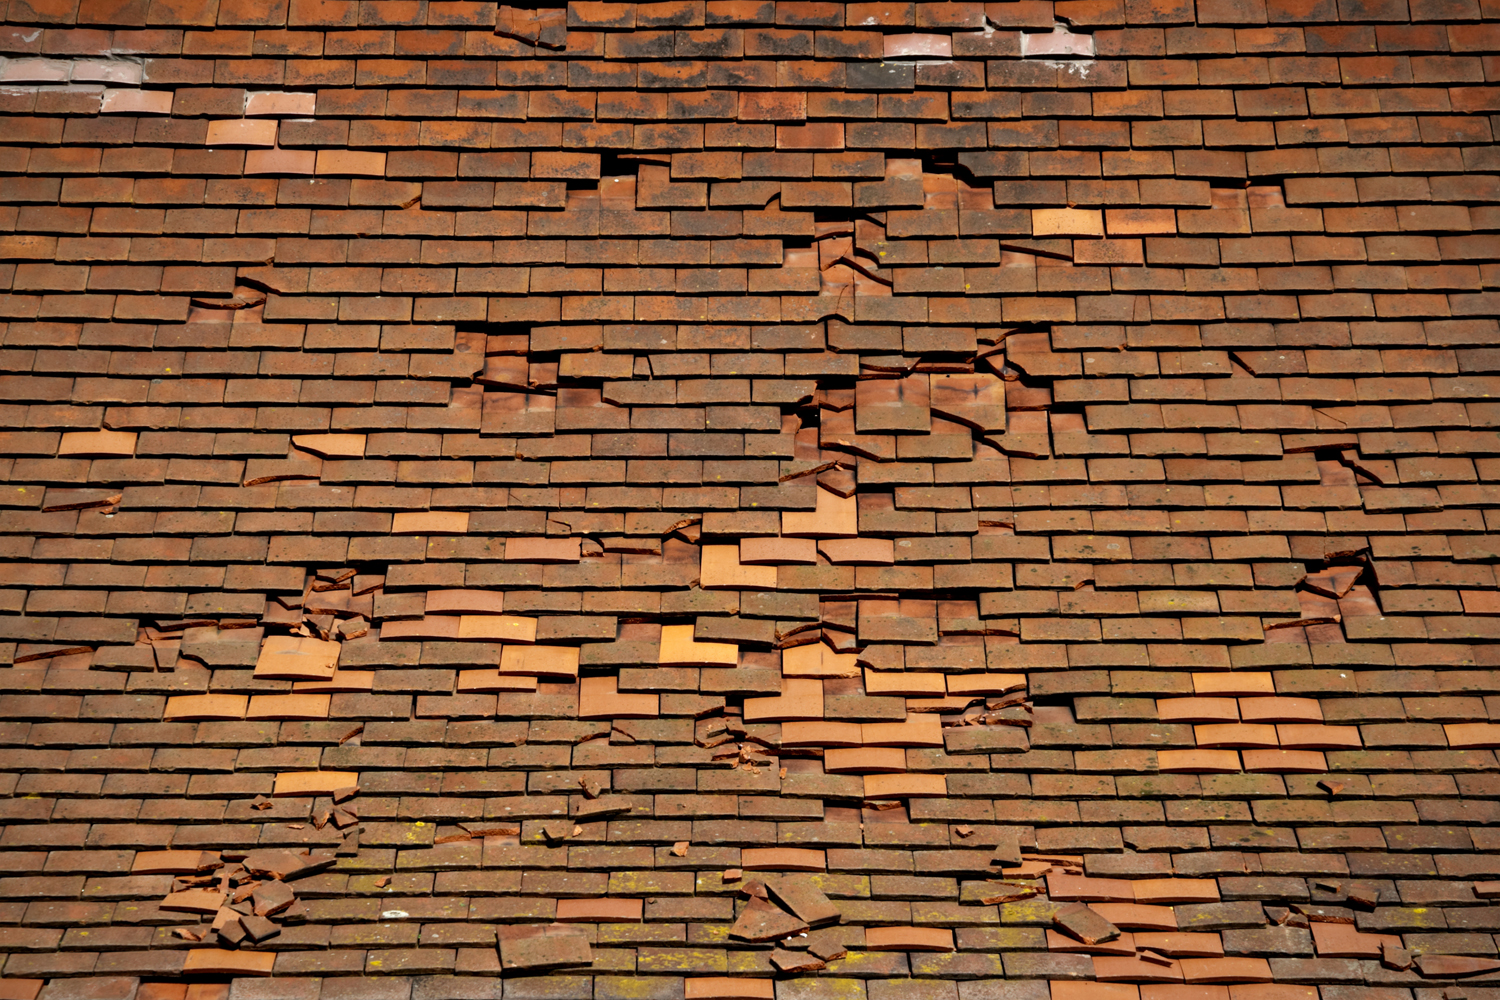 Roof shingles in disrepair